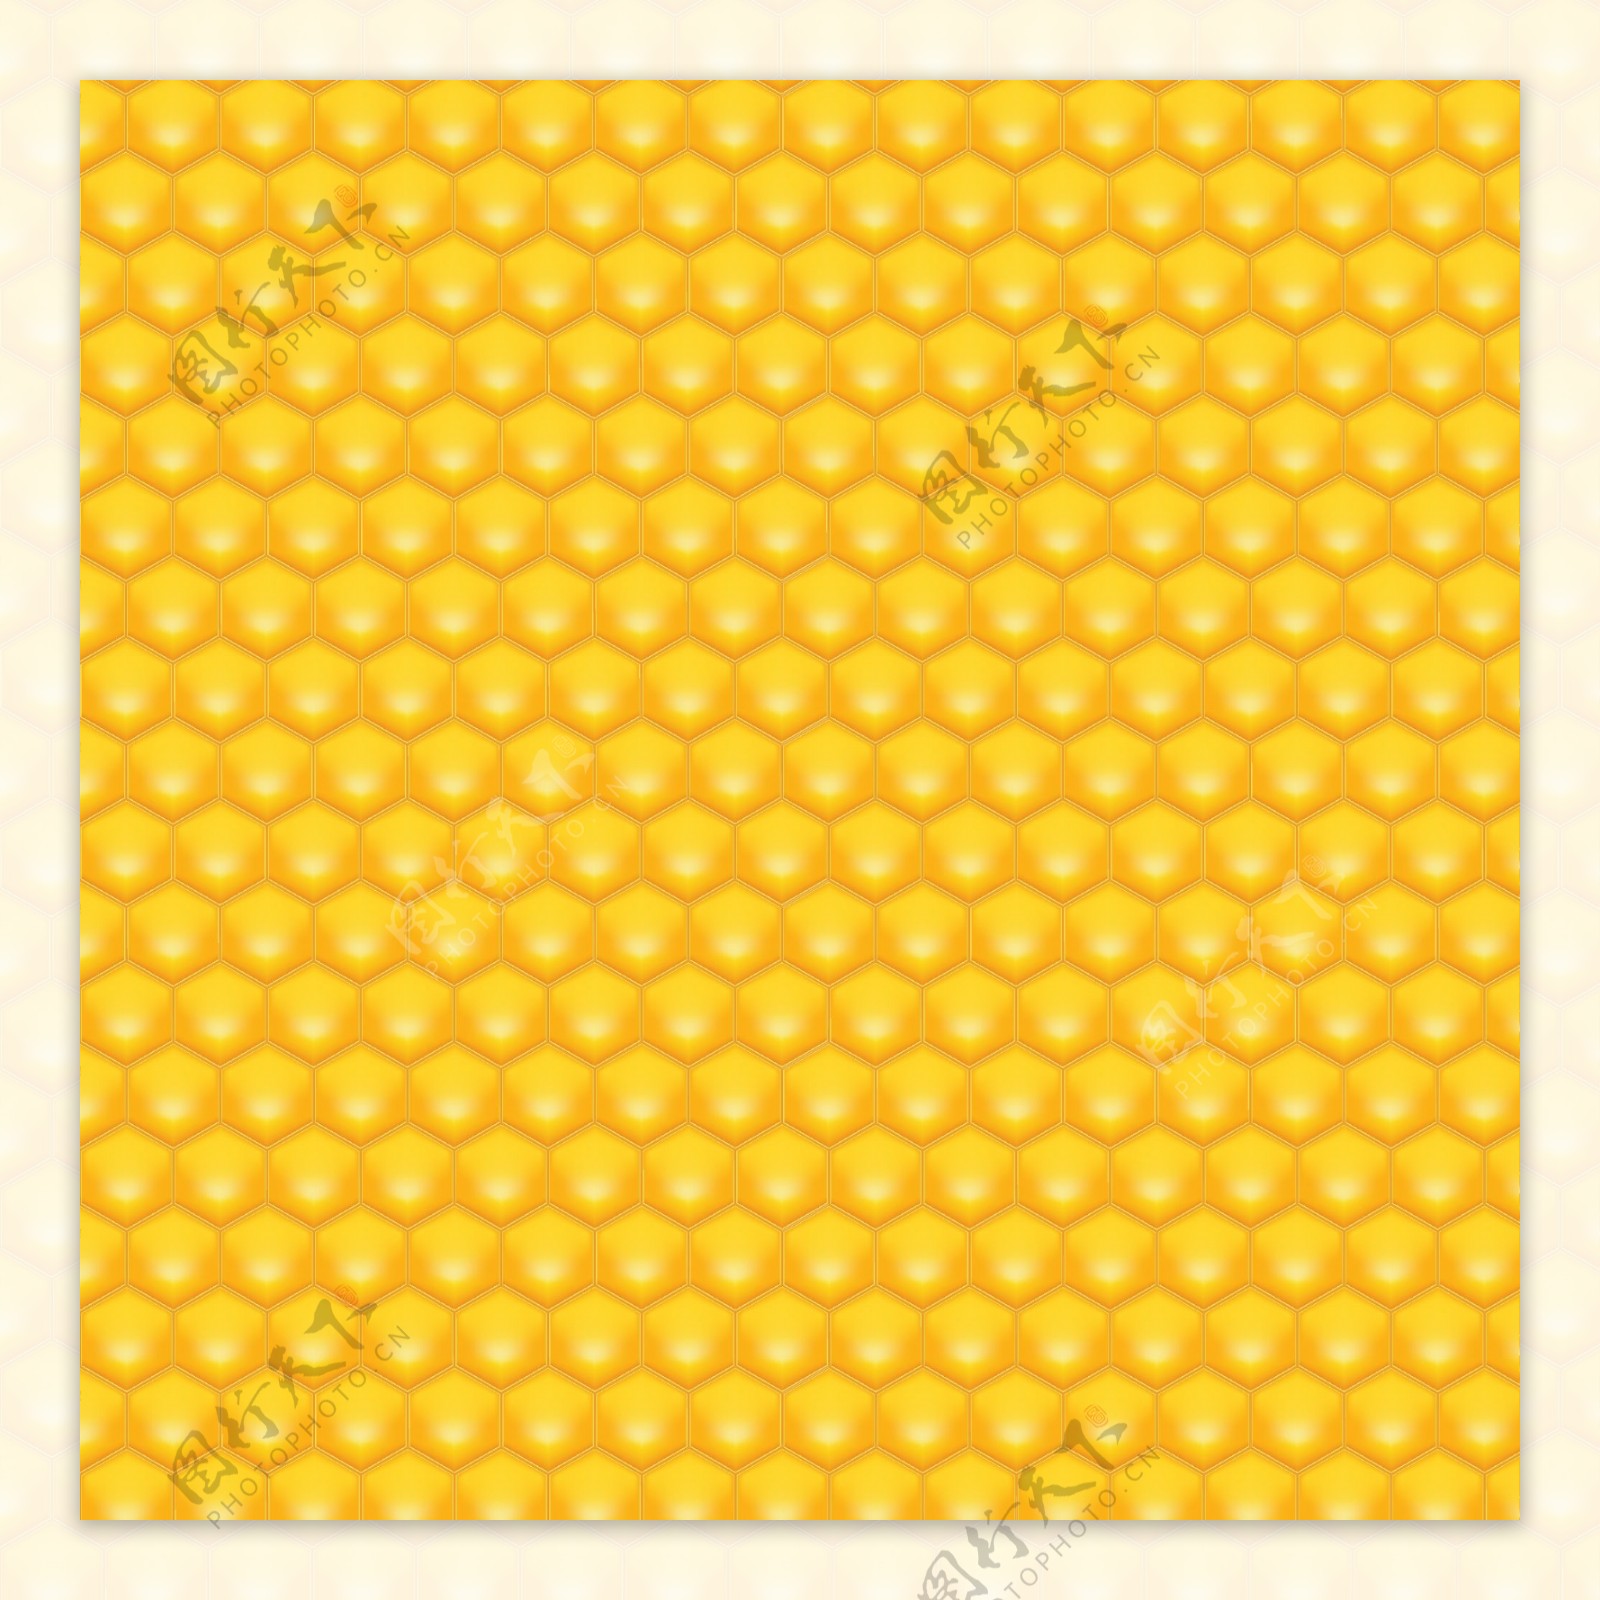 光滑的六角形蜂蜜图案